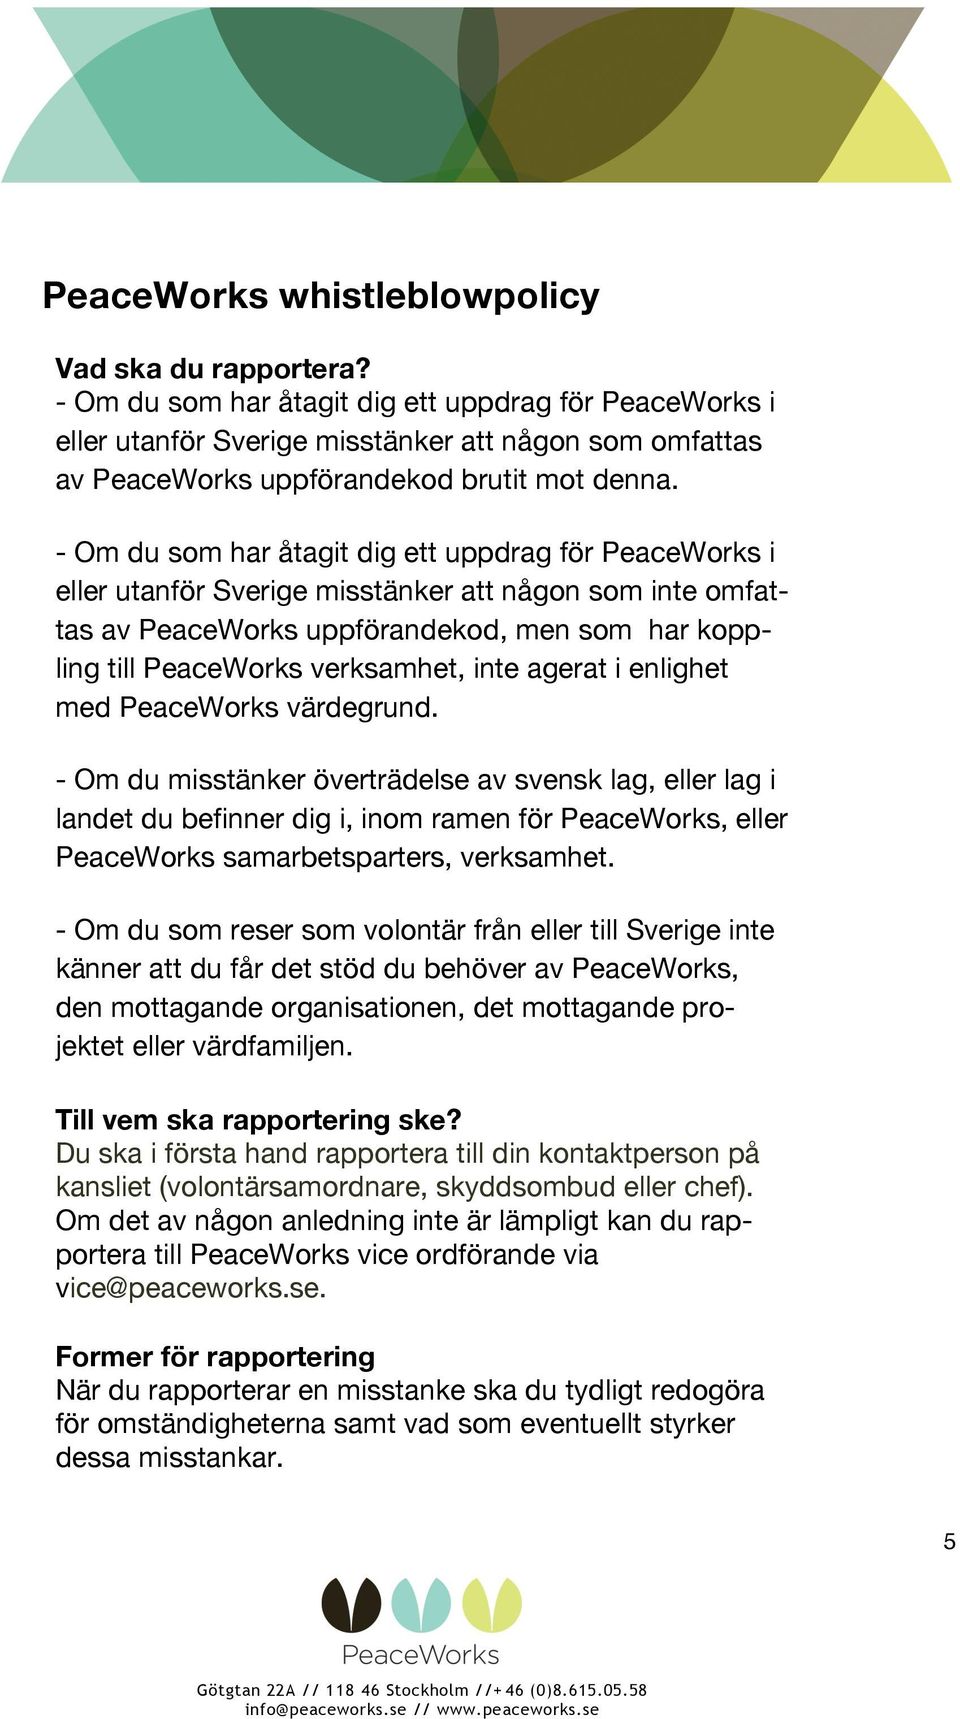 - Om du som har åtagit dig ett uppdrag för PeaceWorks i eller utanför Sverige misstänker att någon som inte omfattas av PeaceWorks uppförandekod, men som har koppling till PeaceWorks verksamhet, inte